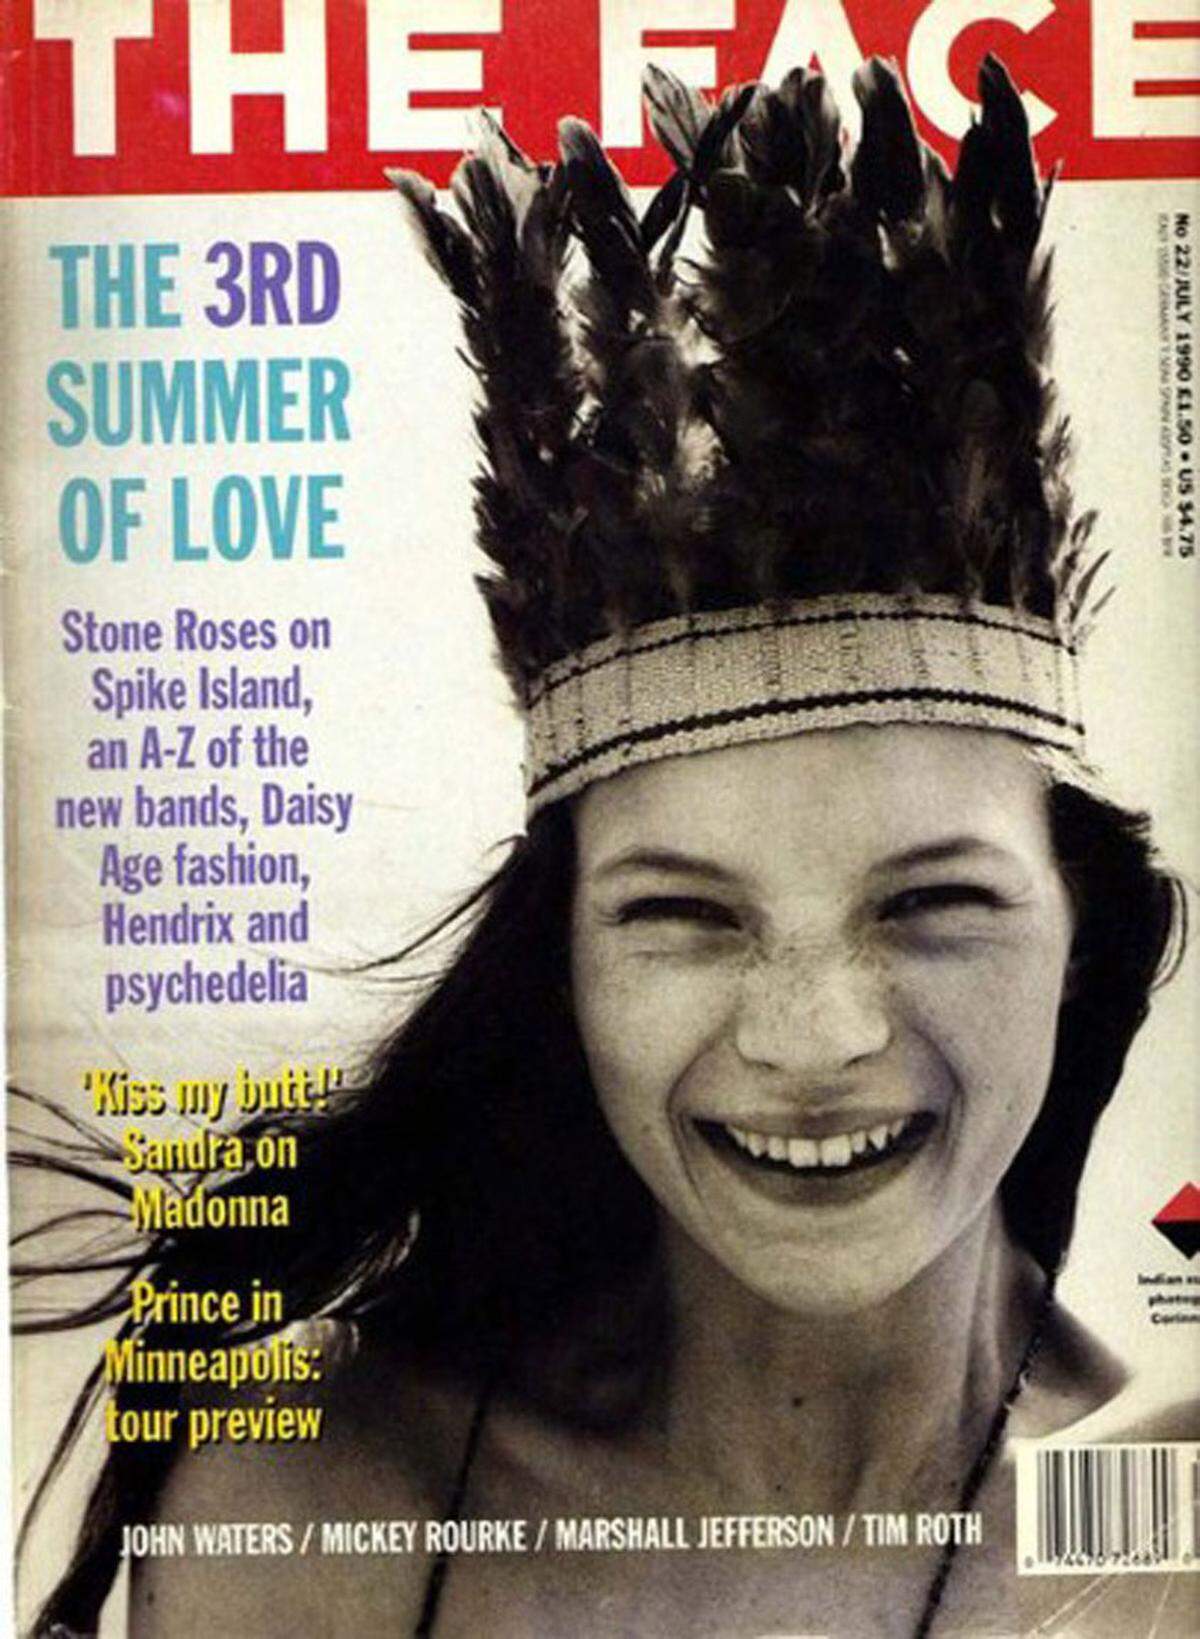 Am 16. Jänner 1974 wurde Kate Moss in Croydon, Südlondon geboren. Die Eltern, Linda und Pete Moss, ließen sich scheiden, als sie 13 war. Sie hat einen jüngeren Bruder sowie einen Halbbruder und eine Halbschwester. 1988 wurde sie am JFK-Flughafen in New York von Modelagentur-Gründerin Sarah Doukas entdeckt. Ihr erstes Cover hatte sie auf dem mittlerweile eingestellten Magazin "The Face", für das sie gleich oben ohne posieren musste.